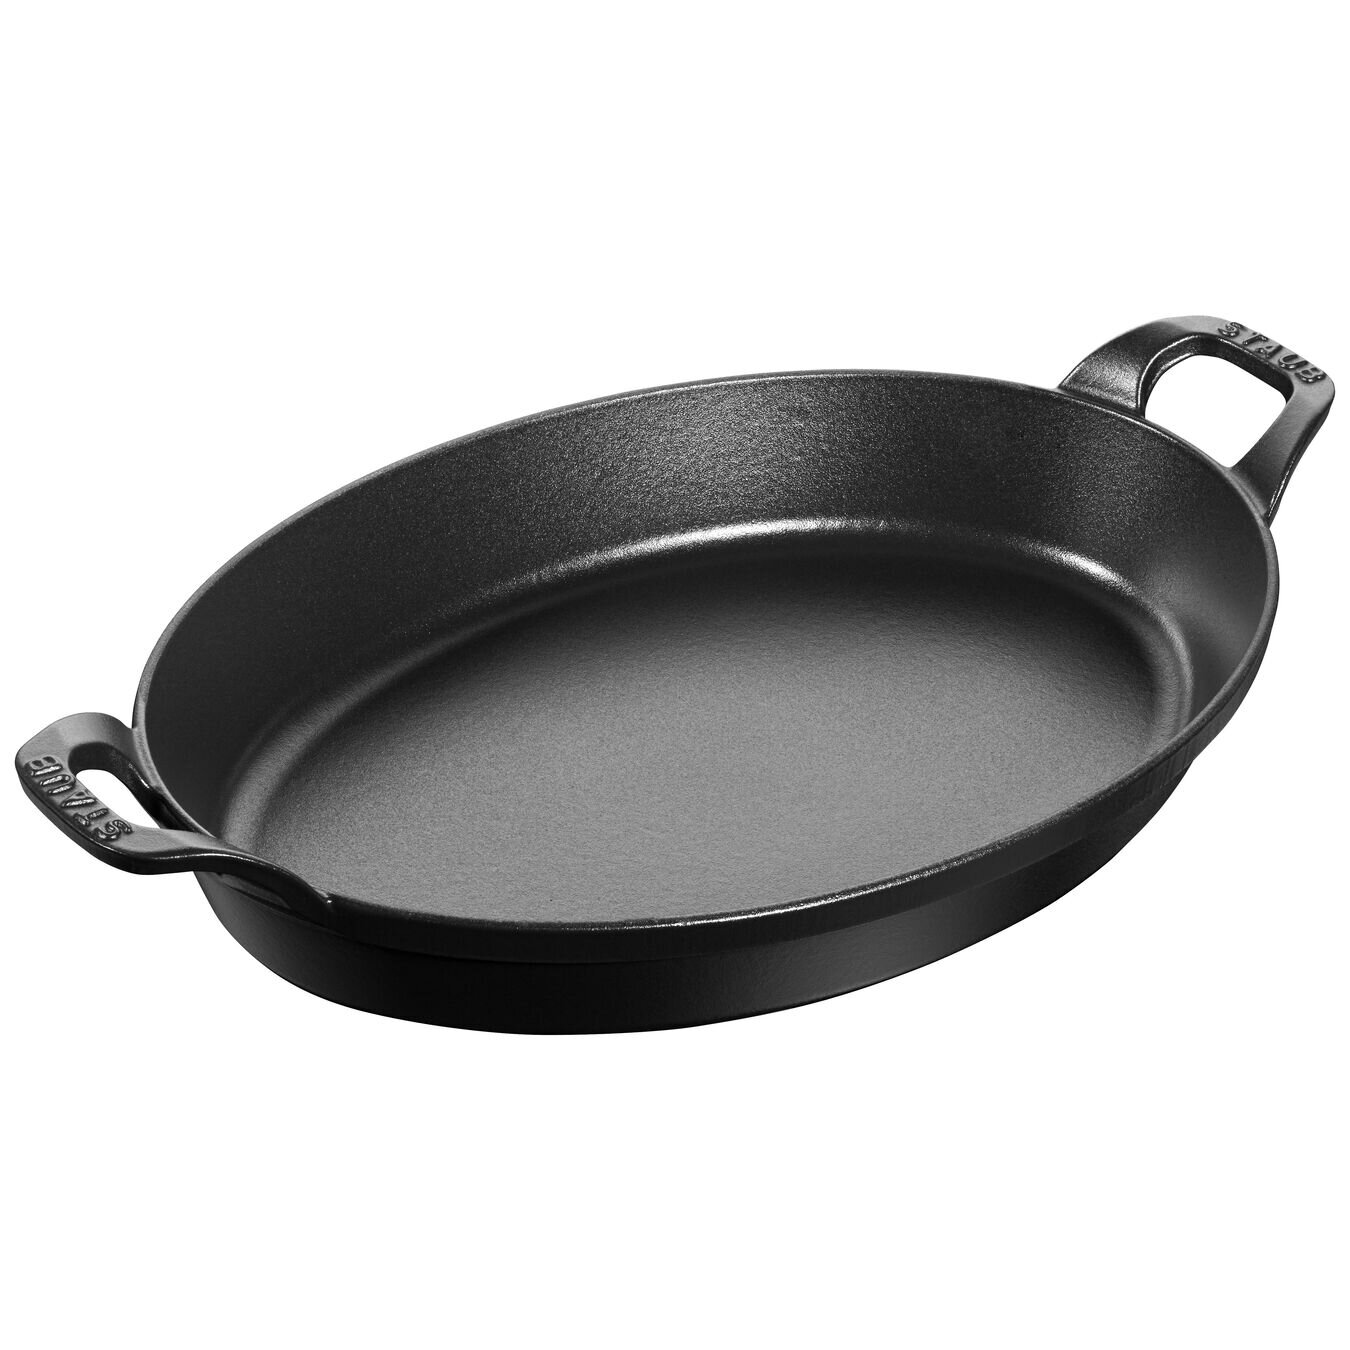 https://assets.wfcdn.com/im/29682551/compr-r85/1930/193029544/oval-2-qt-roasting-dish-in-black-matte.jpg